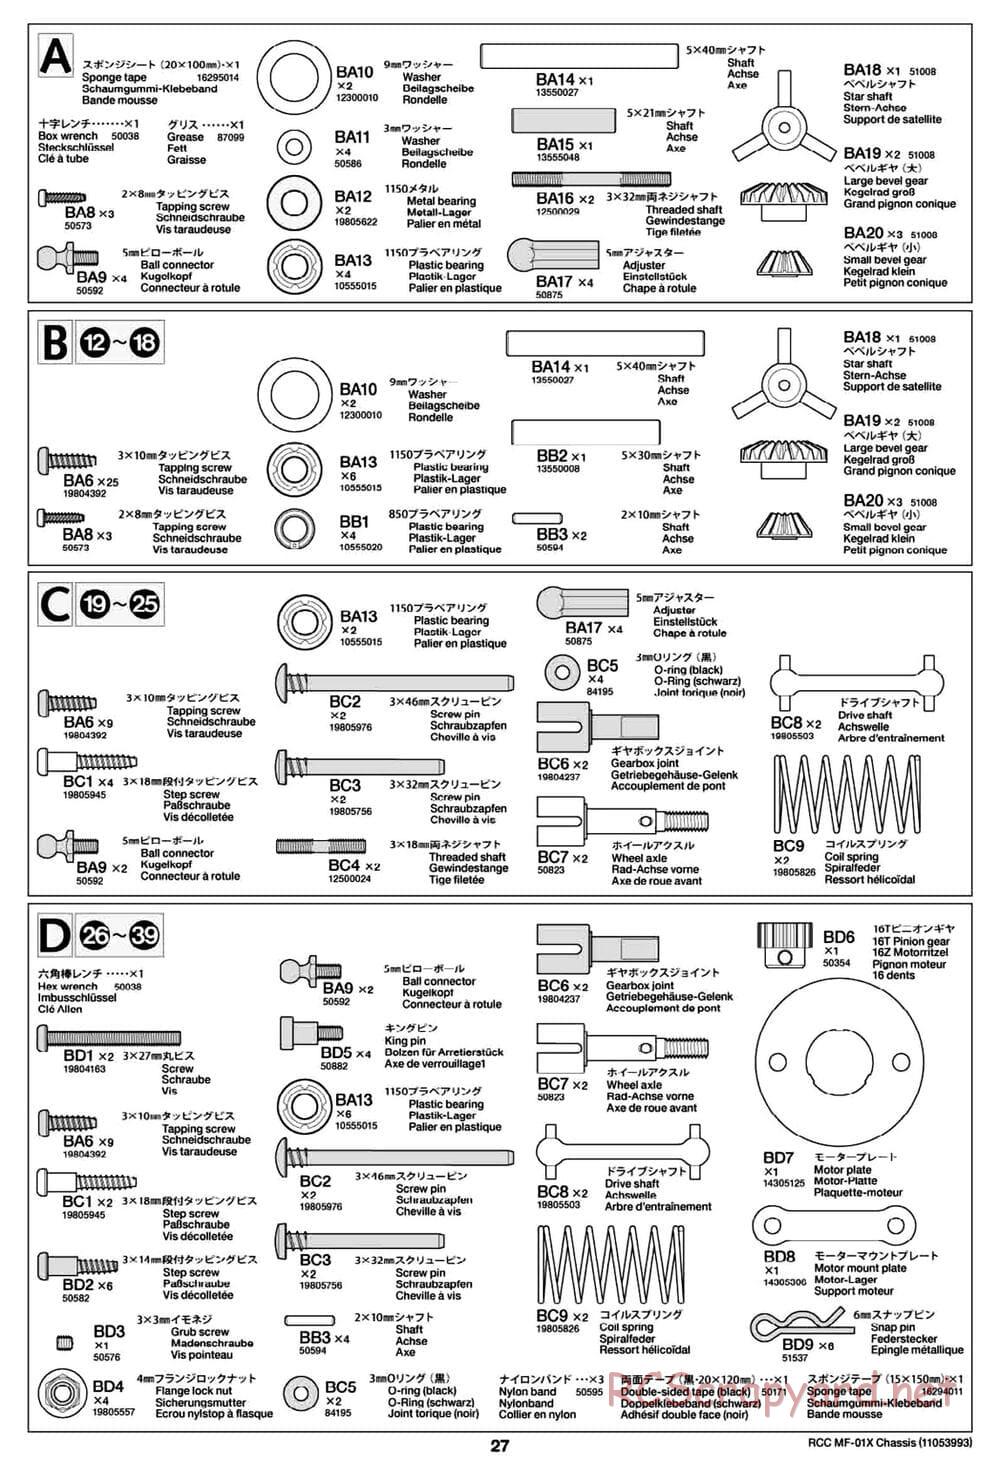 Tamiya - MF-01X Chassis - Manual - Page 27